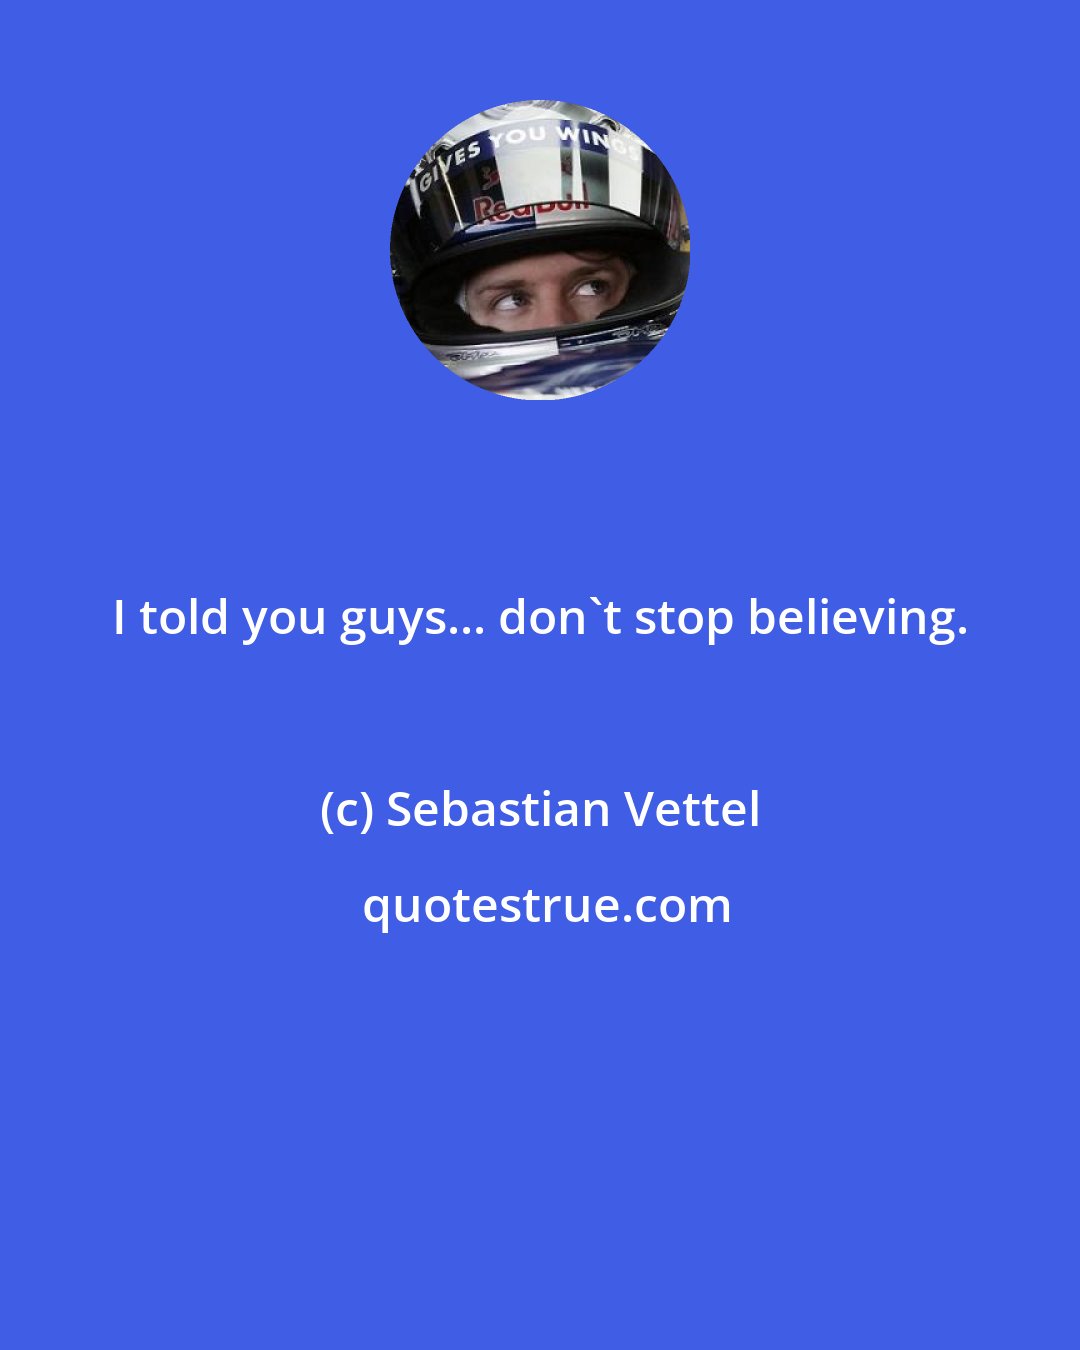 Sebastian Vettel: I told you guys... don't stop believing.